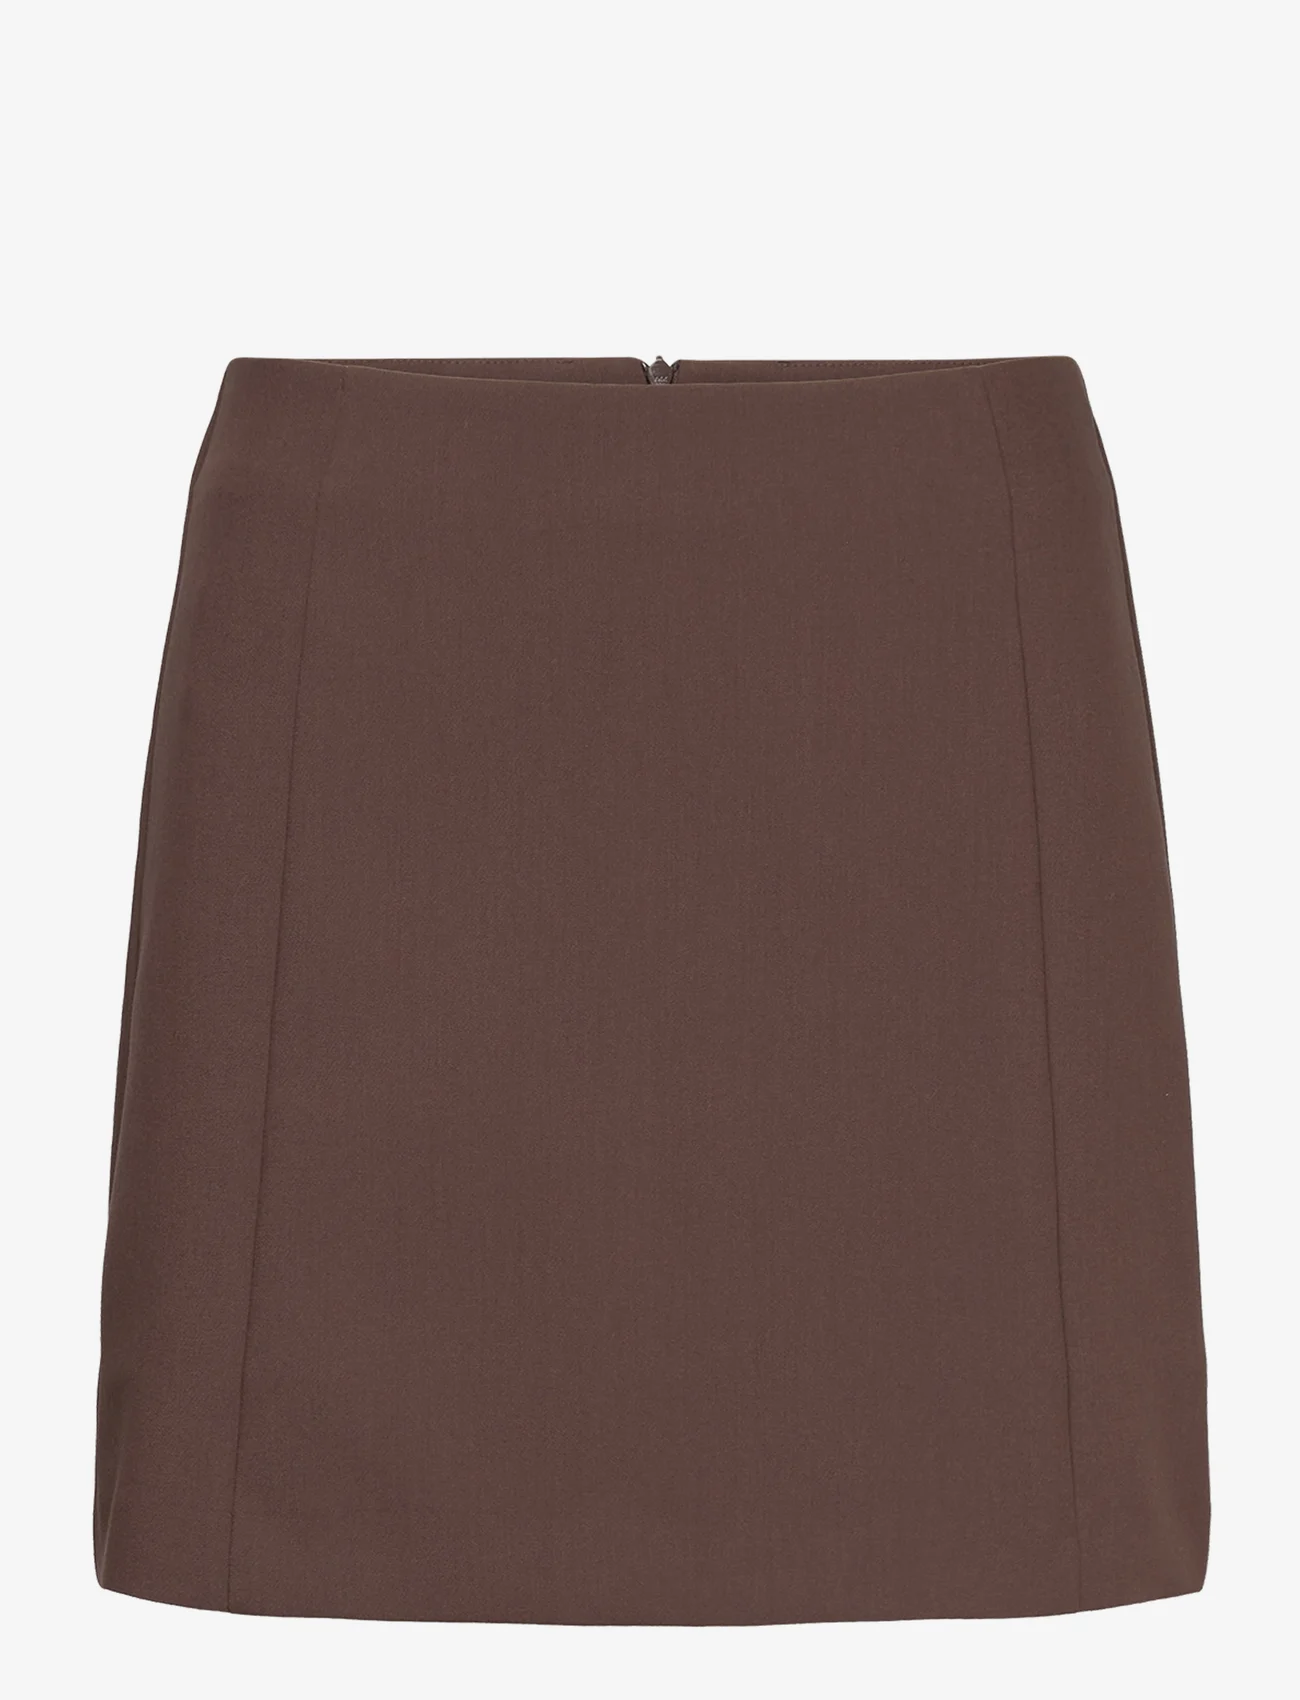 Soaked in Luxury - SLCorinne Short Skirt - korta kjolar - hot fudge - 0